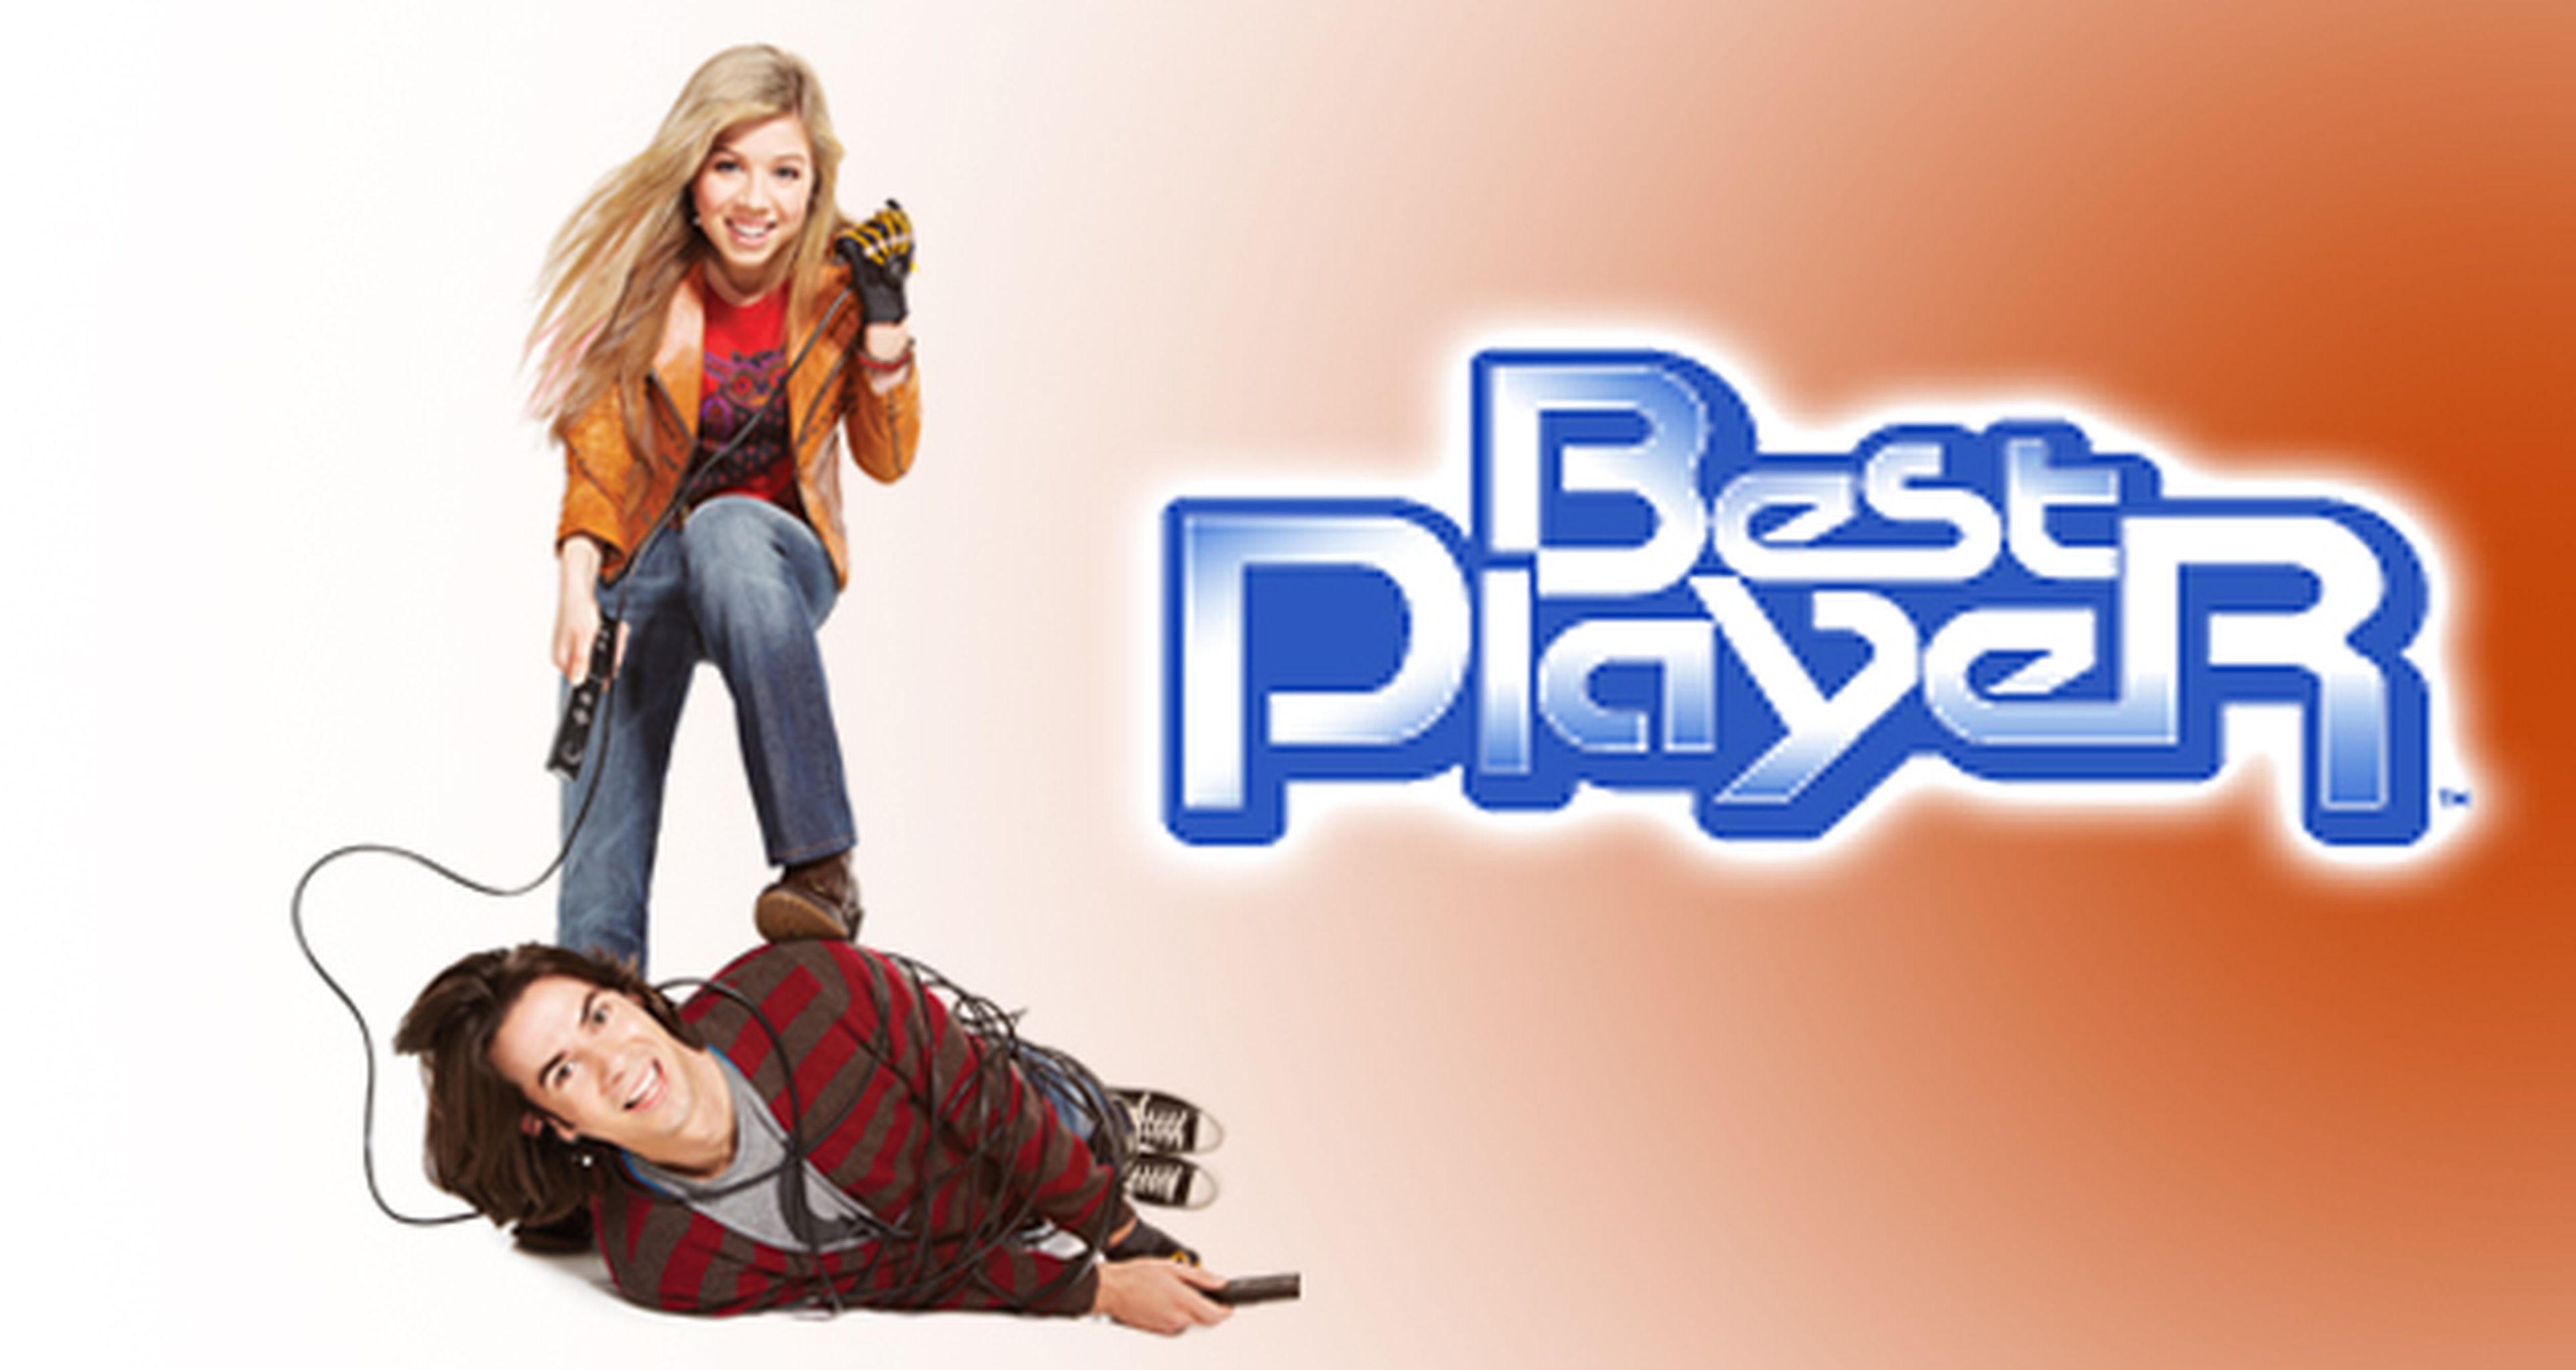 Cine para gamers: crítica de Best Player